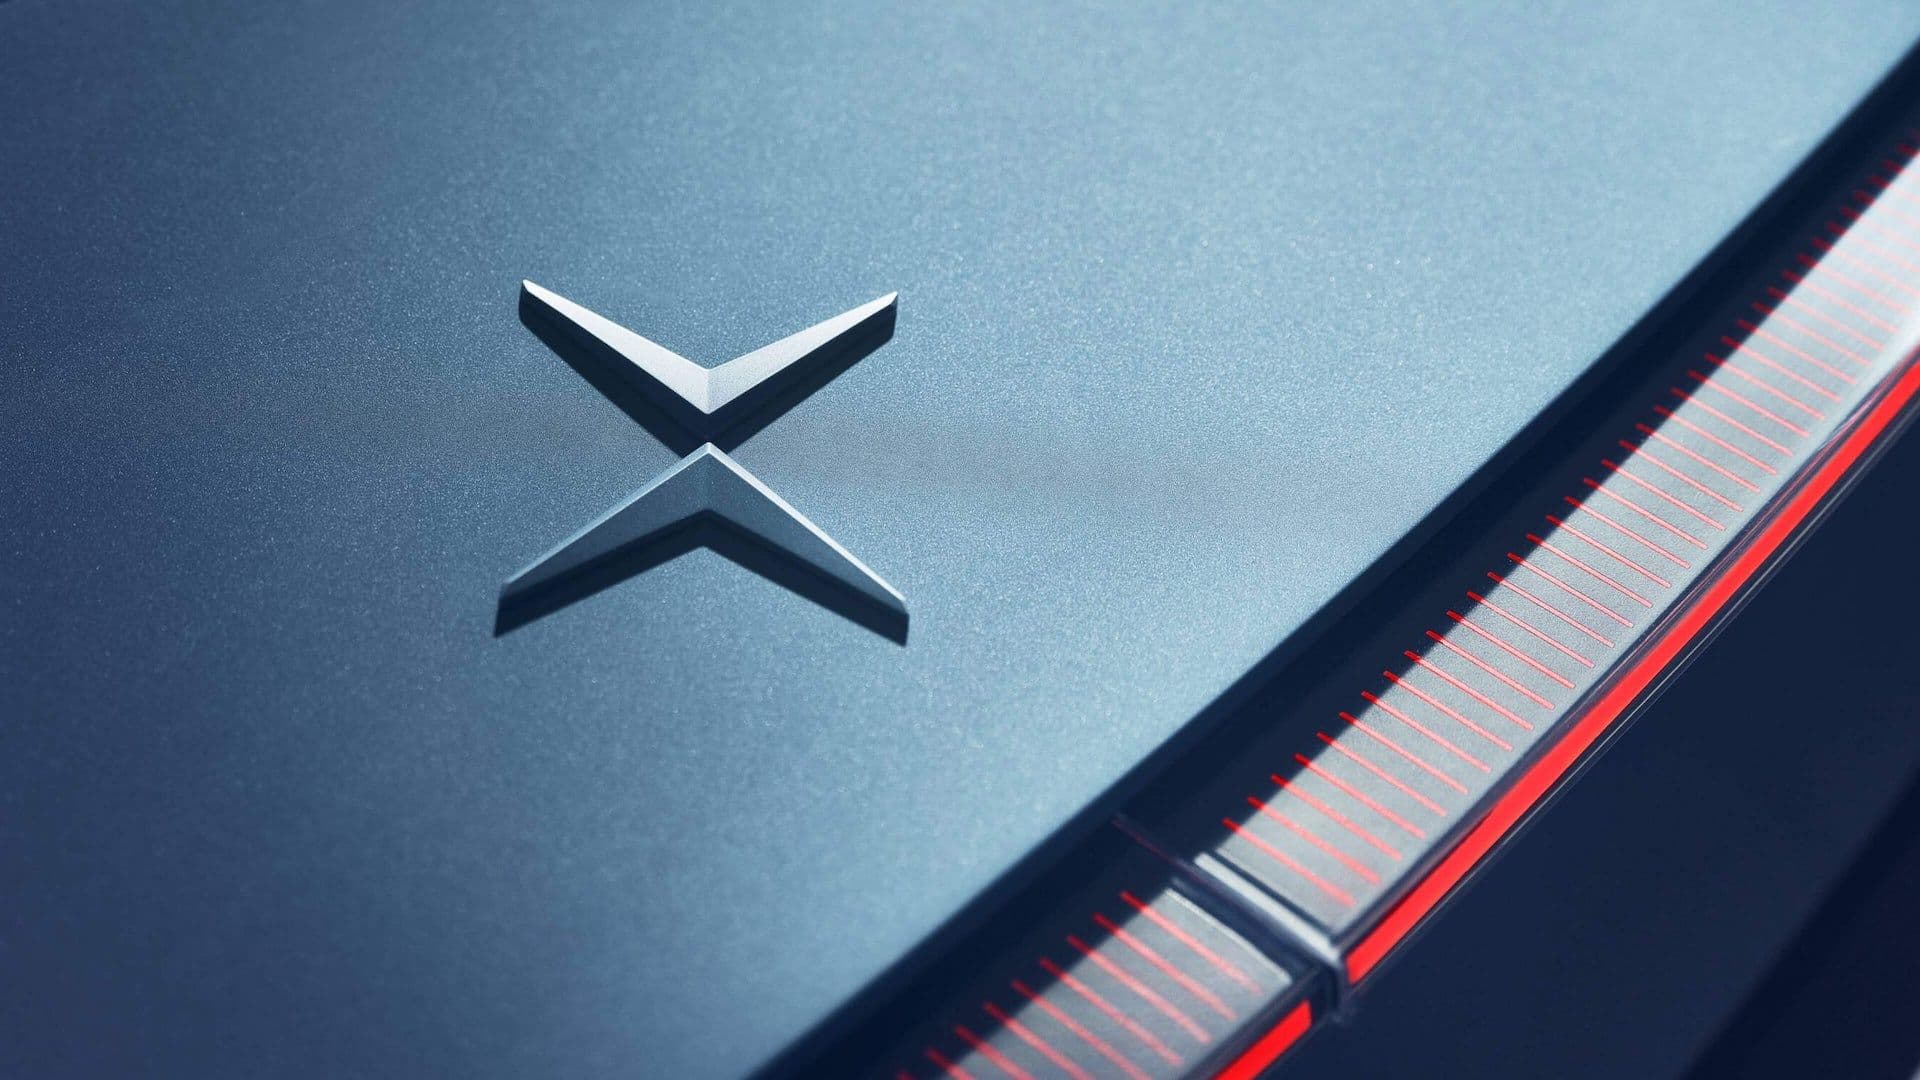 Automobile. Citroën change son logo historique : mais pourquoi ?